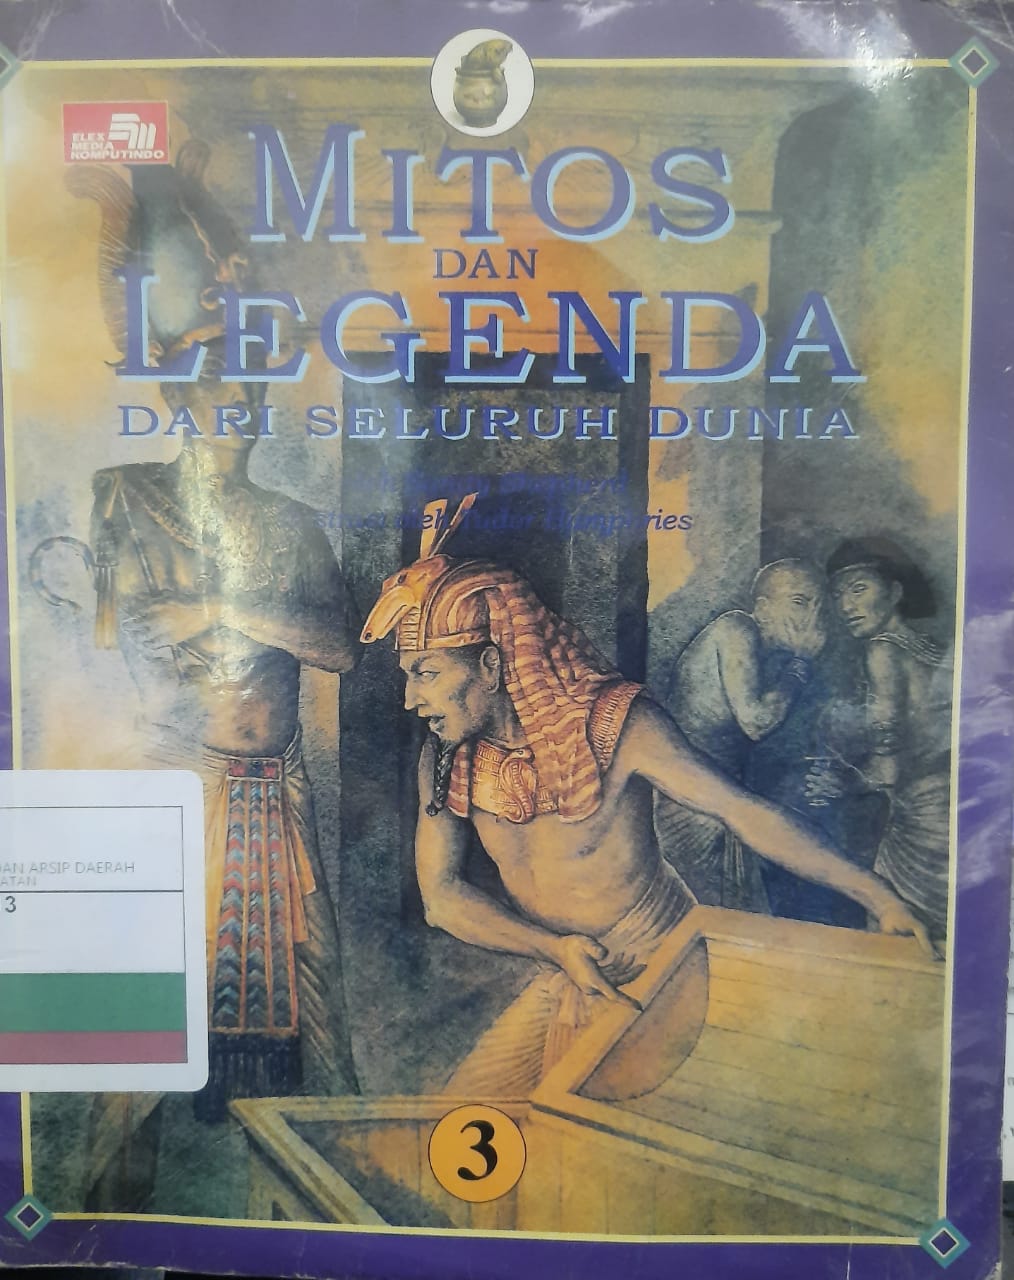 Mitos dan legenda dari seluruh dunia